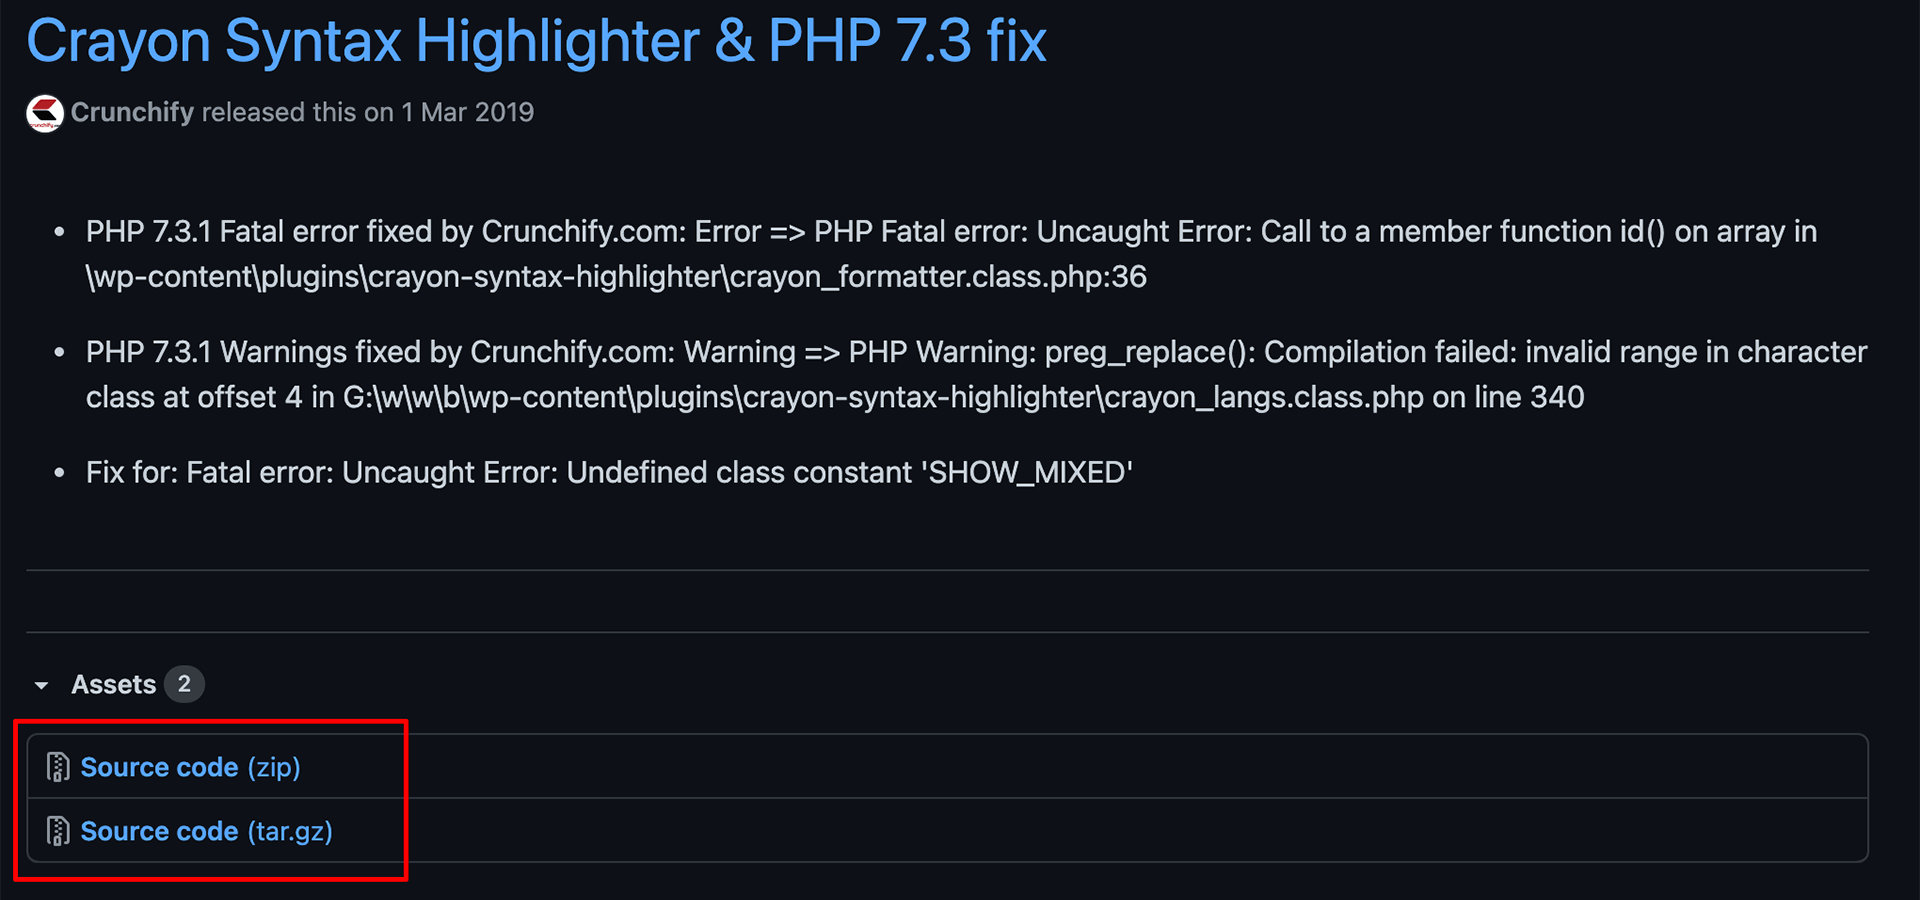 Crayon Syntax HighlighterはGitHubからダウンロードがおすすめです